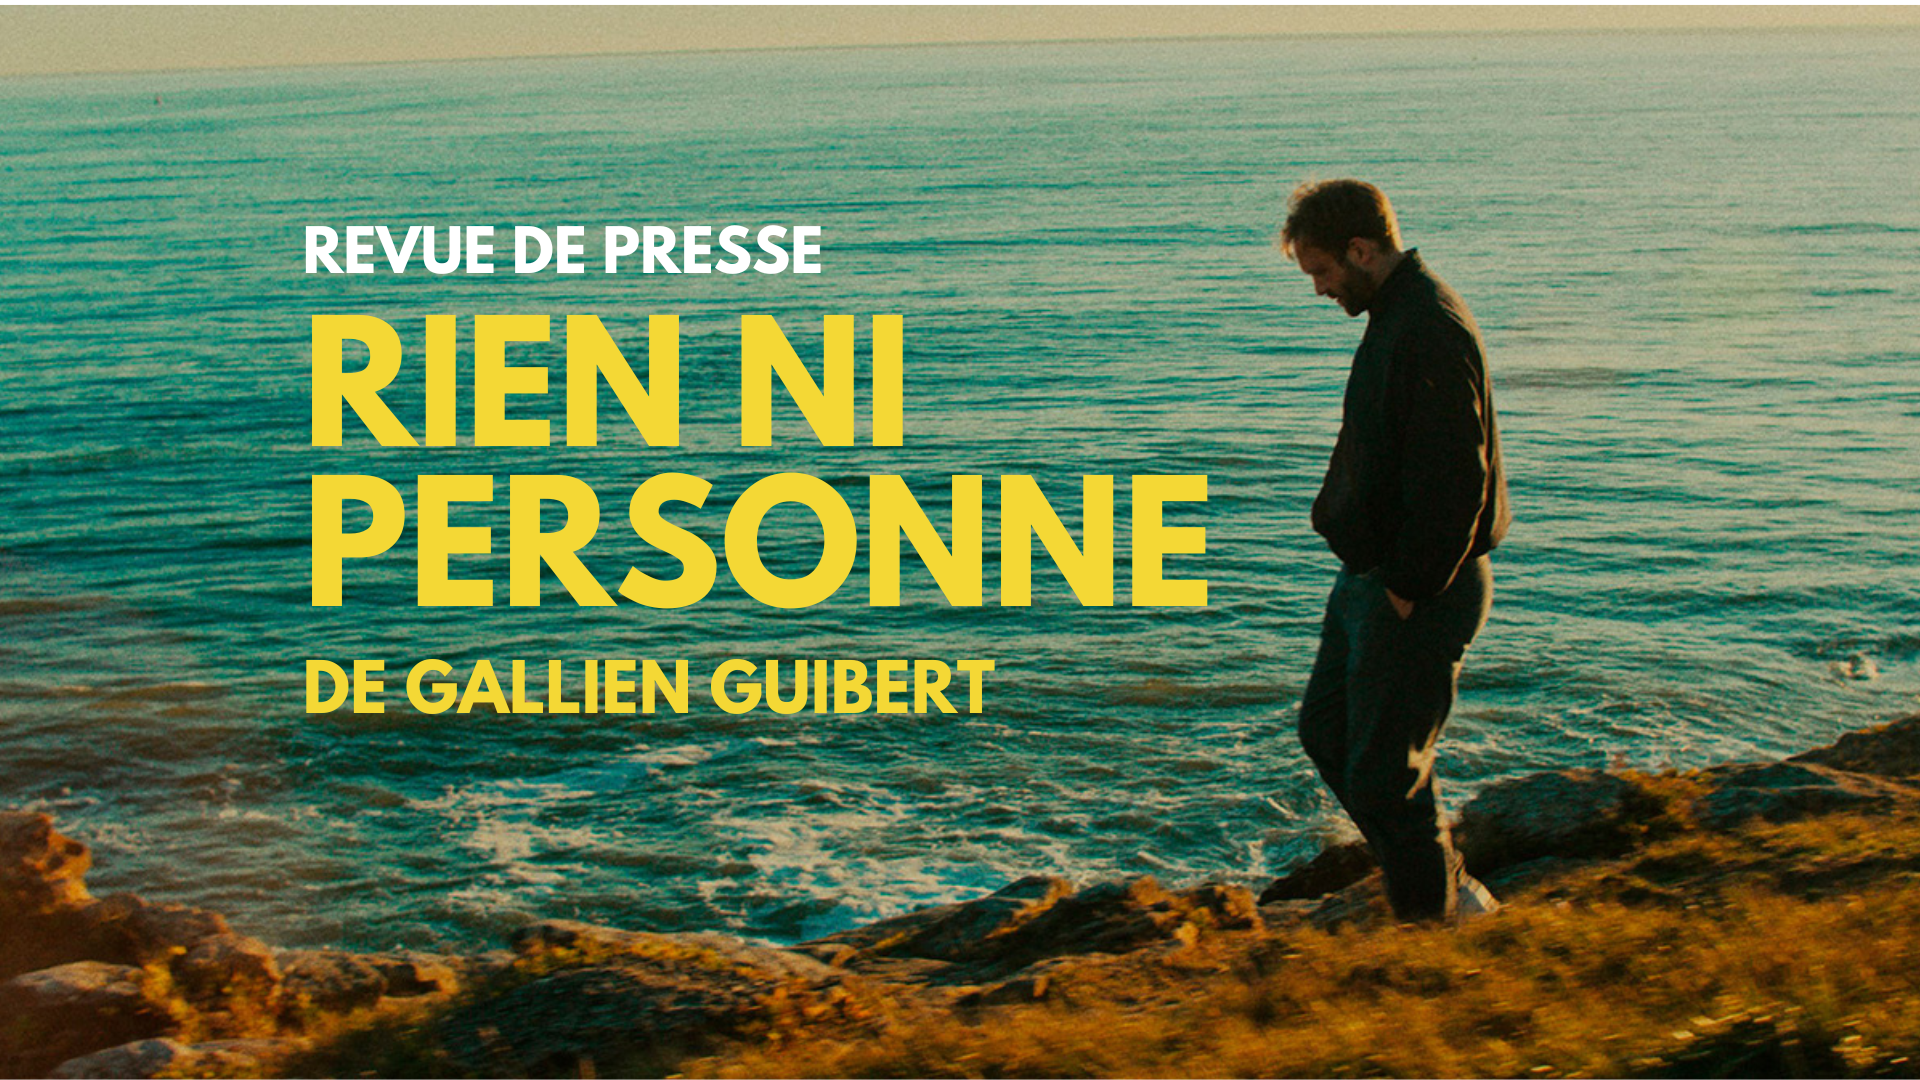 « Rien ni personne » de Gallien Guibert : on en parle dans la presse !